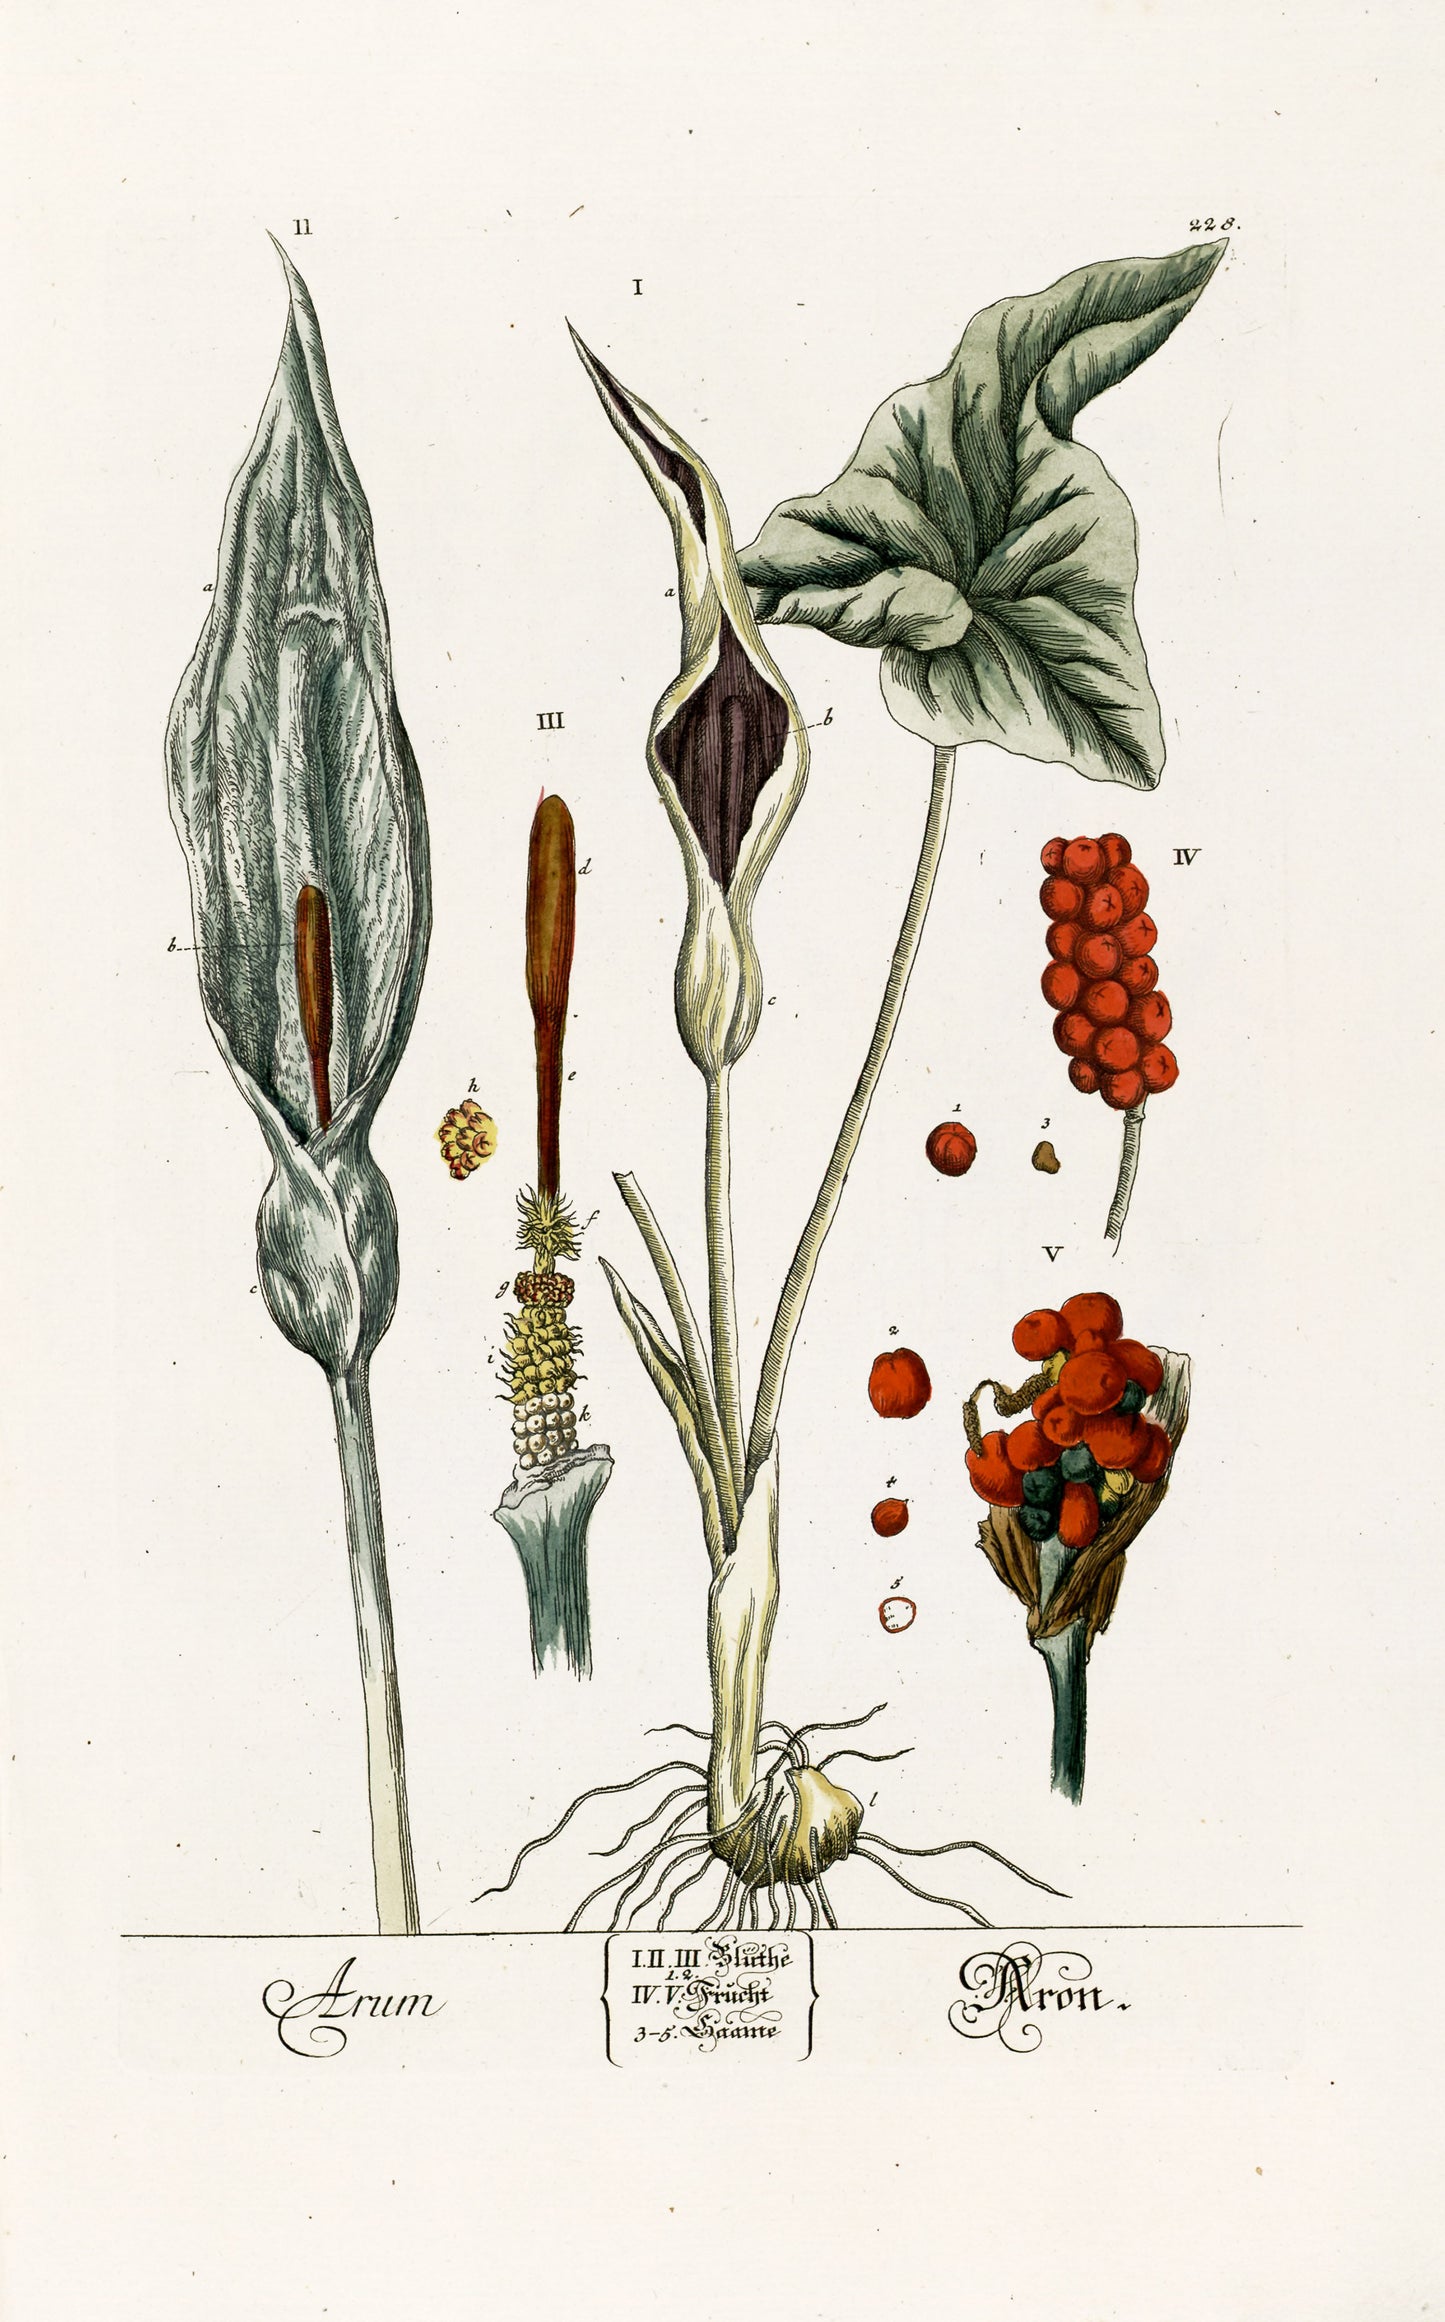 Herbarium Blackwellianum Set 4 [75 Images]